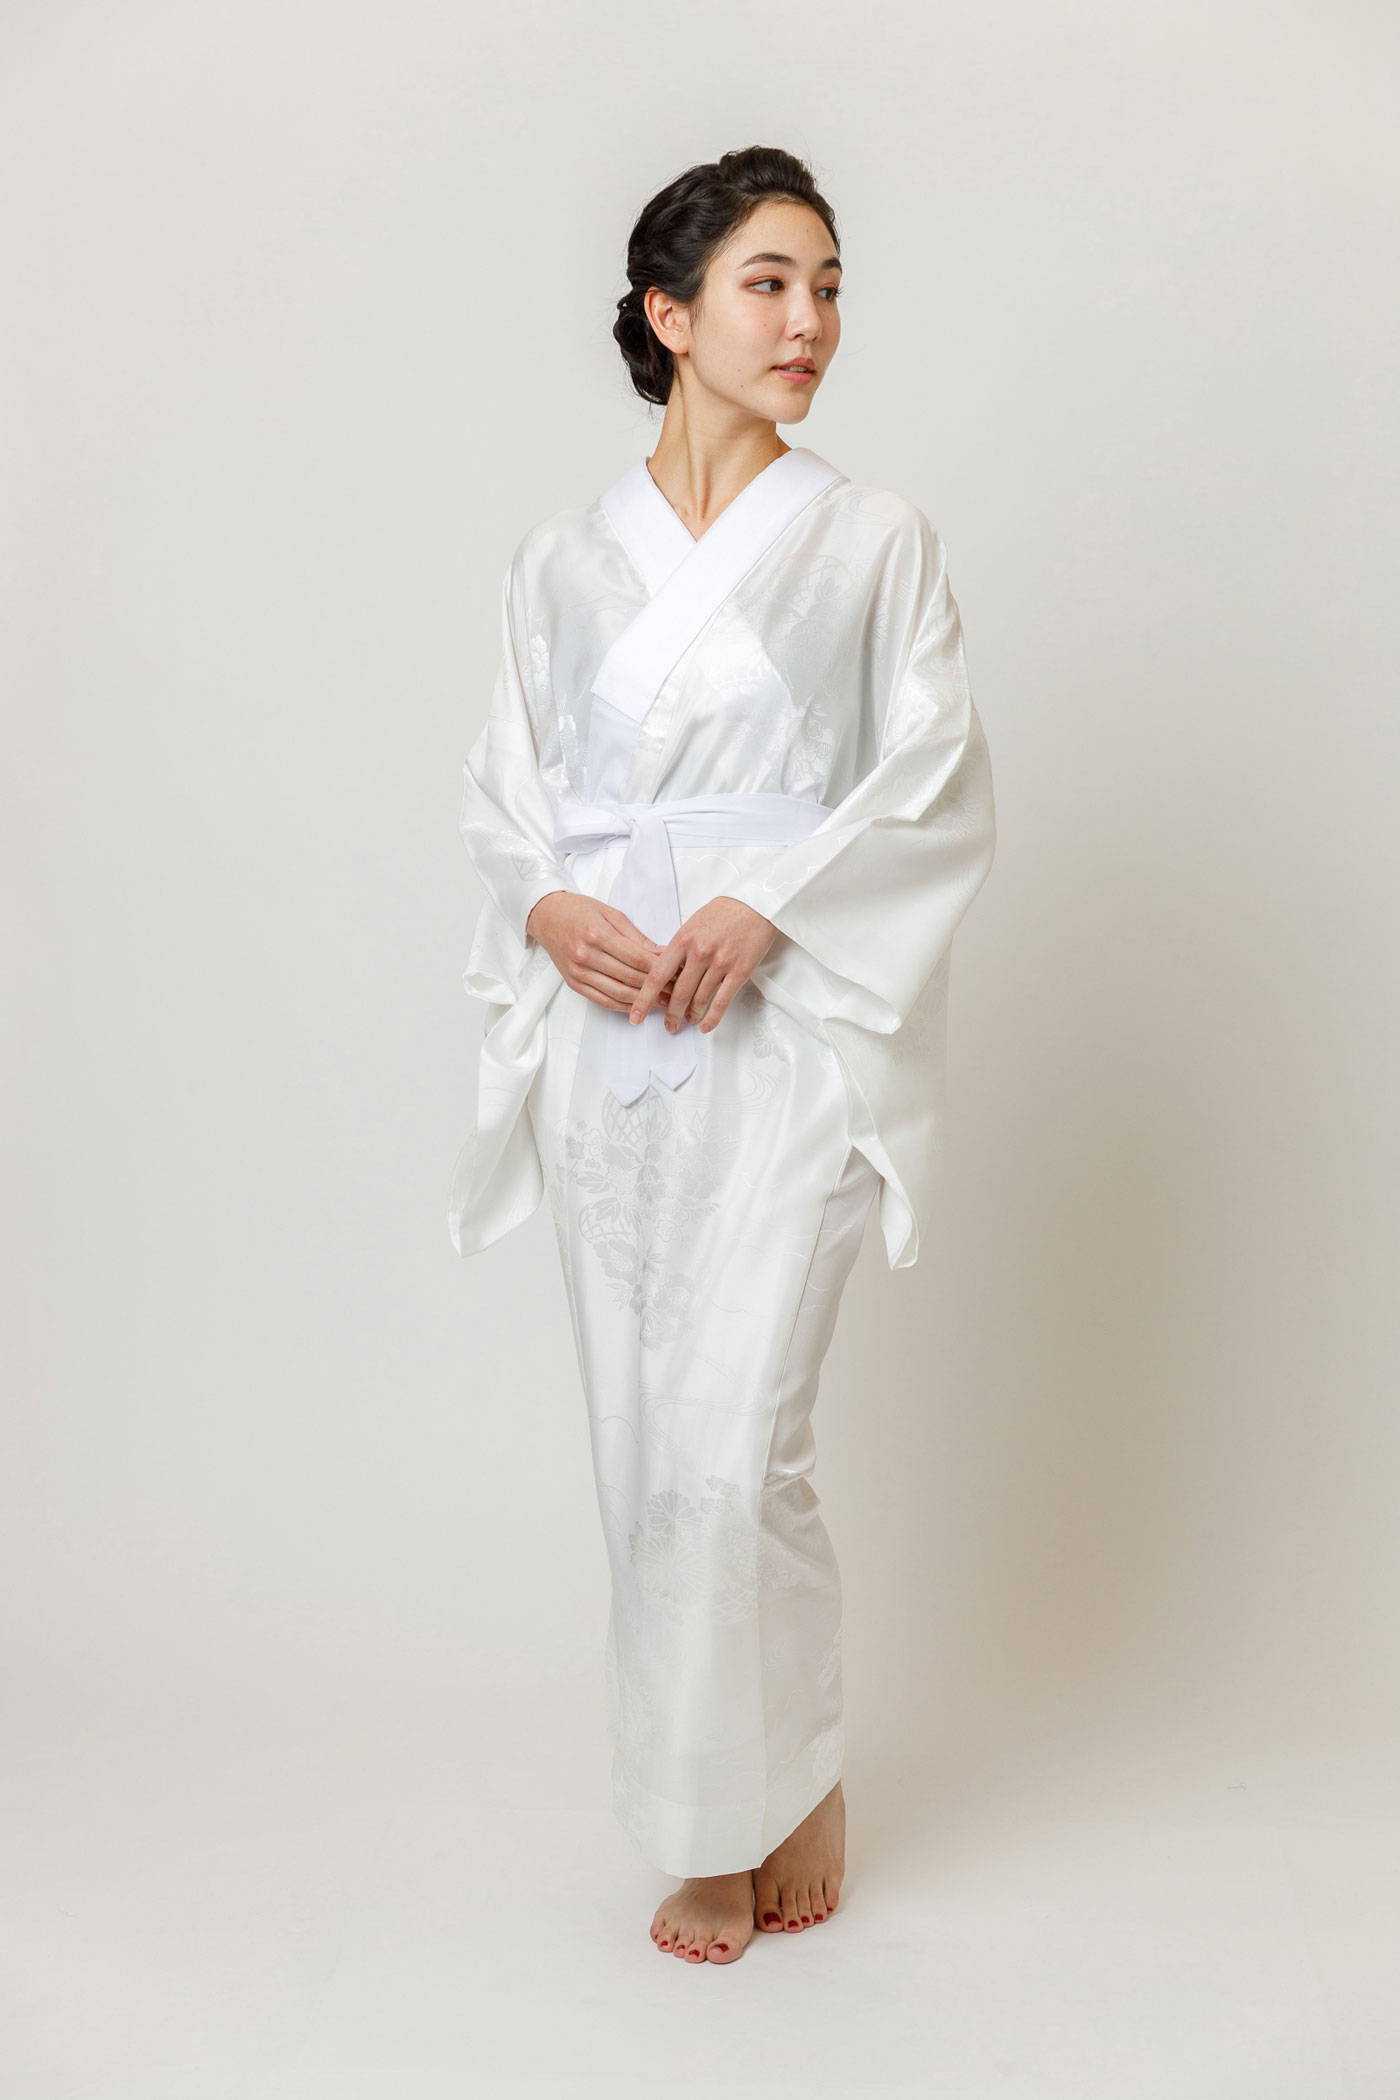 Do you know? Yukata vs Kimono. - Orange County Asian Committee